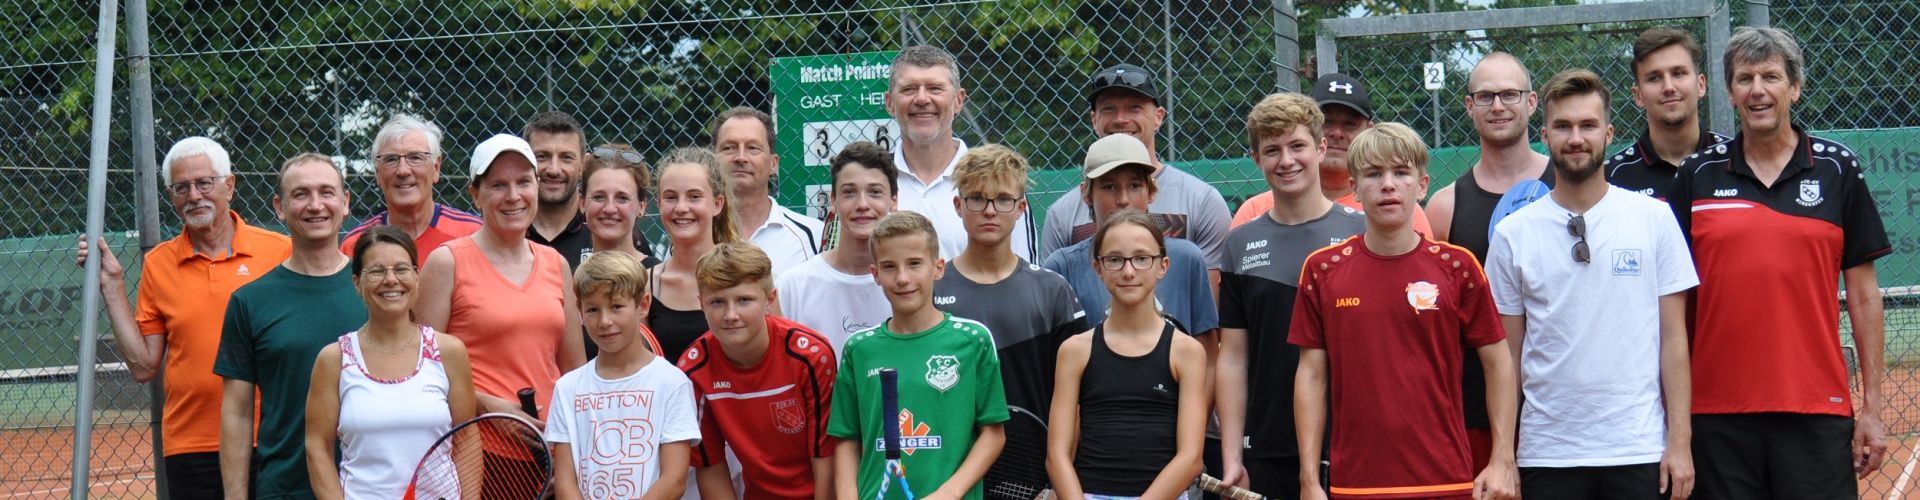 Unter der Leitung von Abteilungsleiter Thomas Faltermeier (r.) veranstaltete die Tennisabteilung des DJK-SV Mirskofen ein Gauditurnier. 